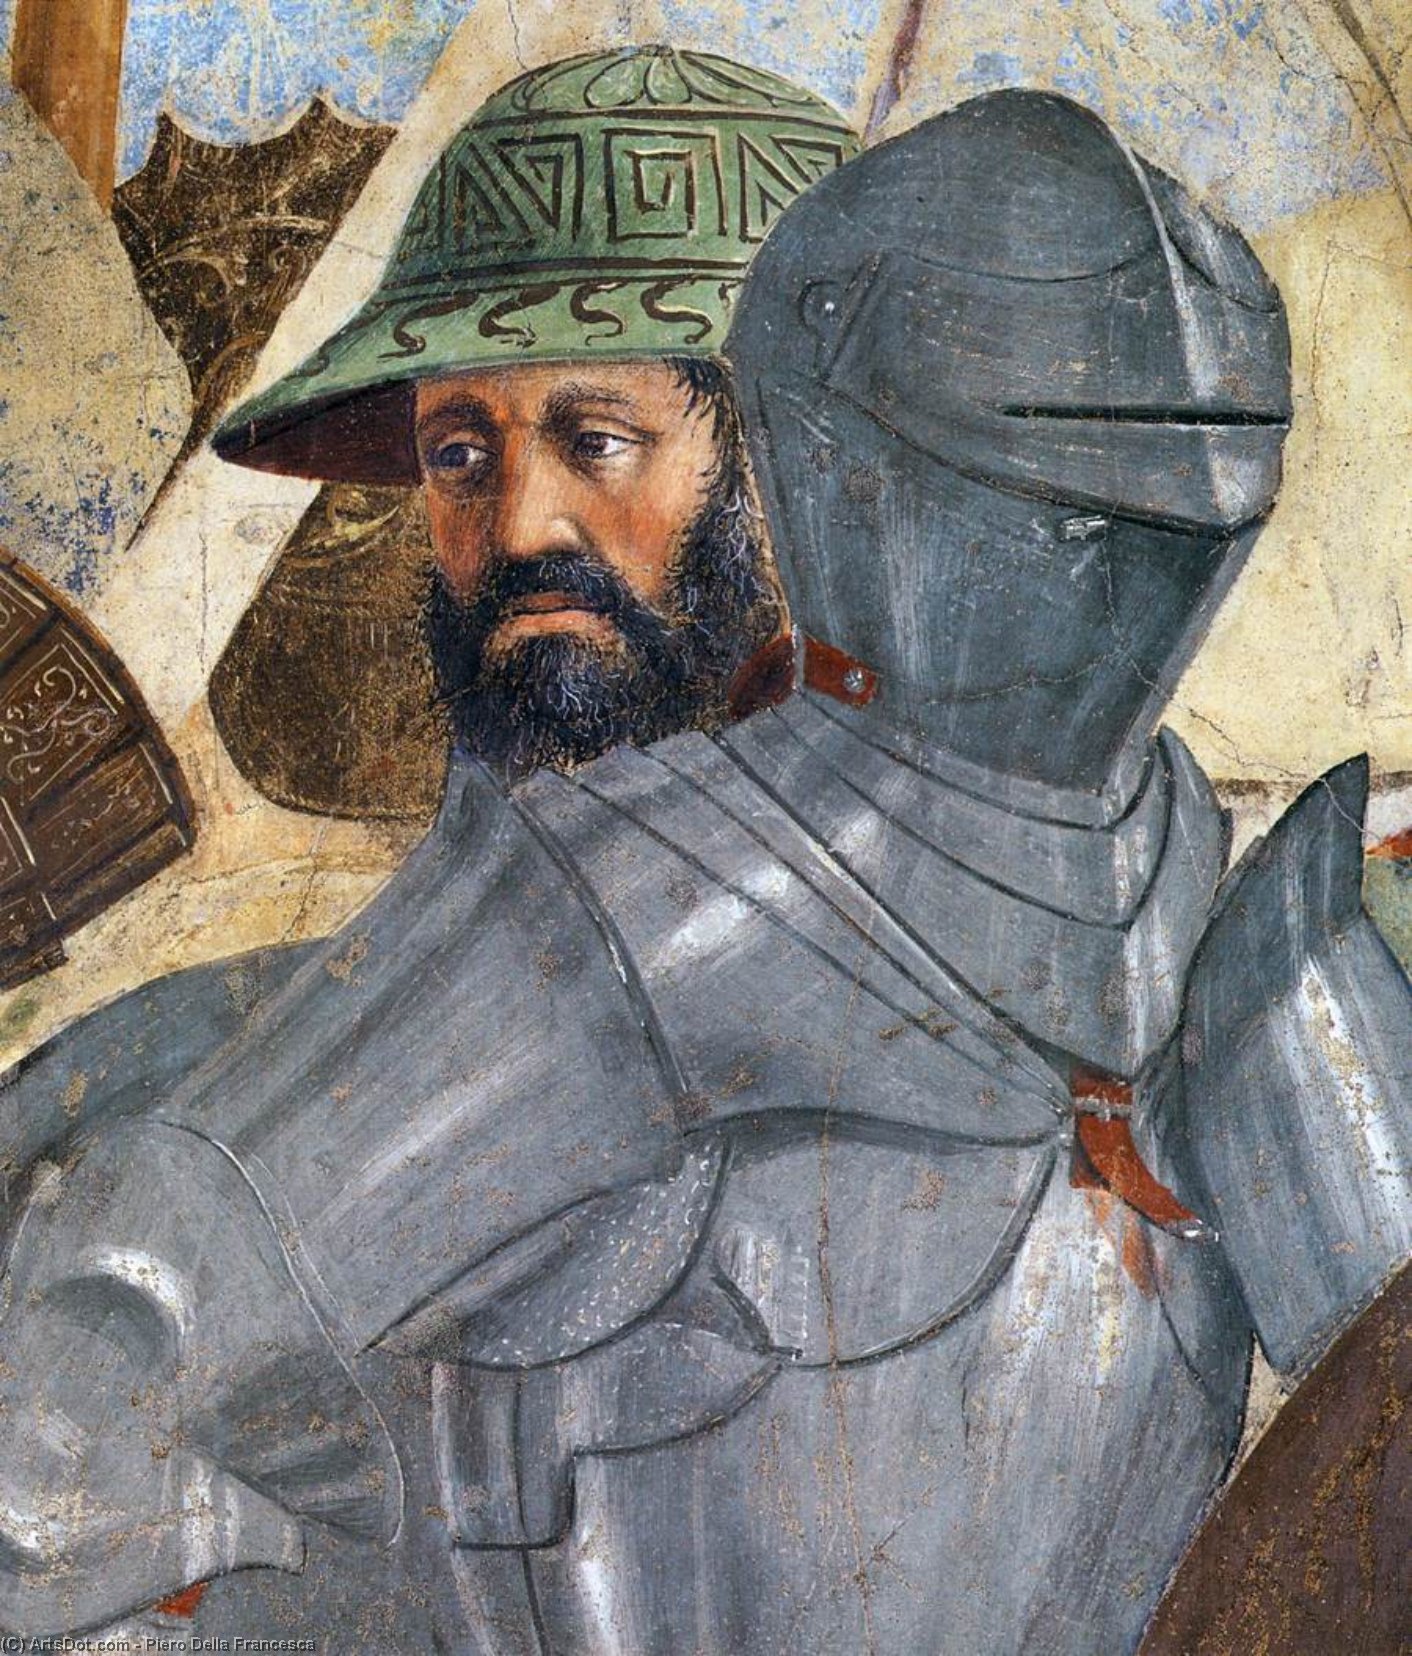 Wikioo.org - Bách khoa toàn thư về mỹ thuật - Vẽ tranh, Tác phẩm nghệ thuật Piero Della Francesca - 8. Battle between Heraclius and Chosroes (detail)